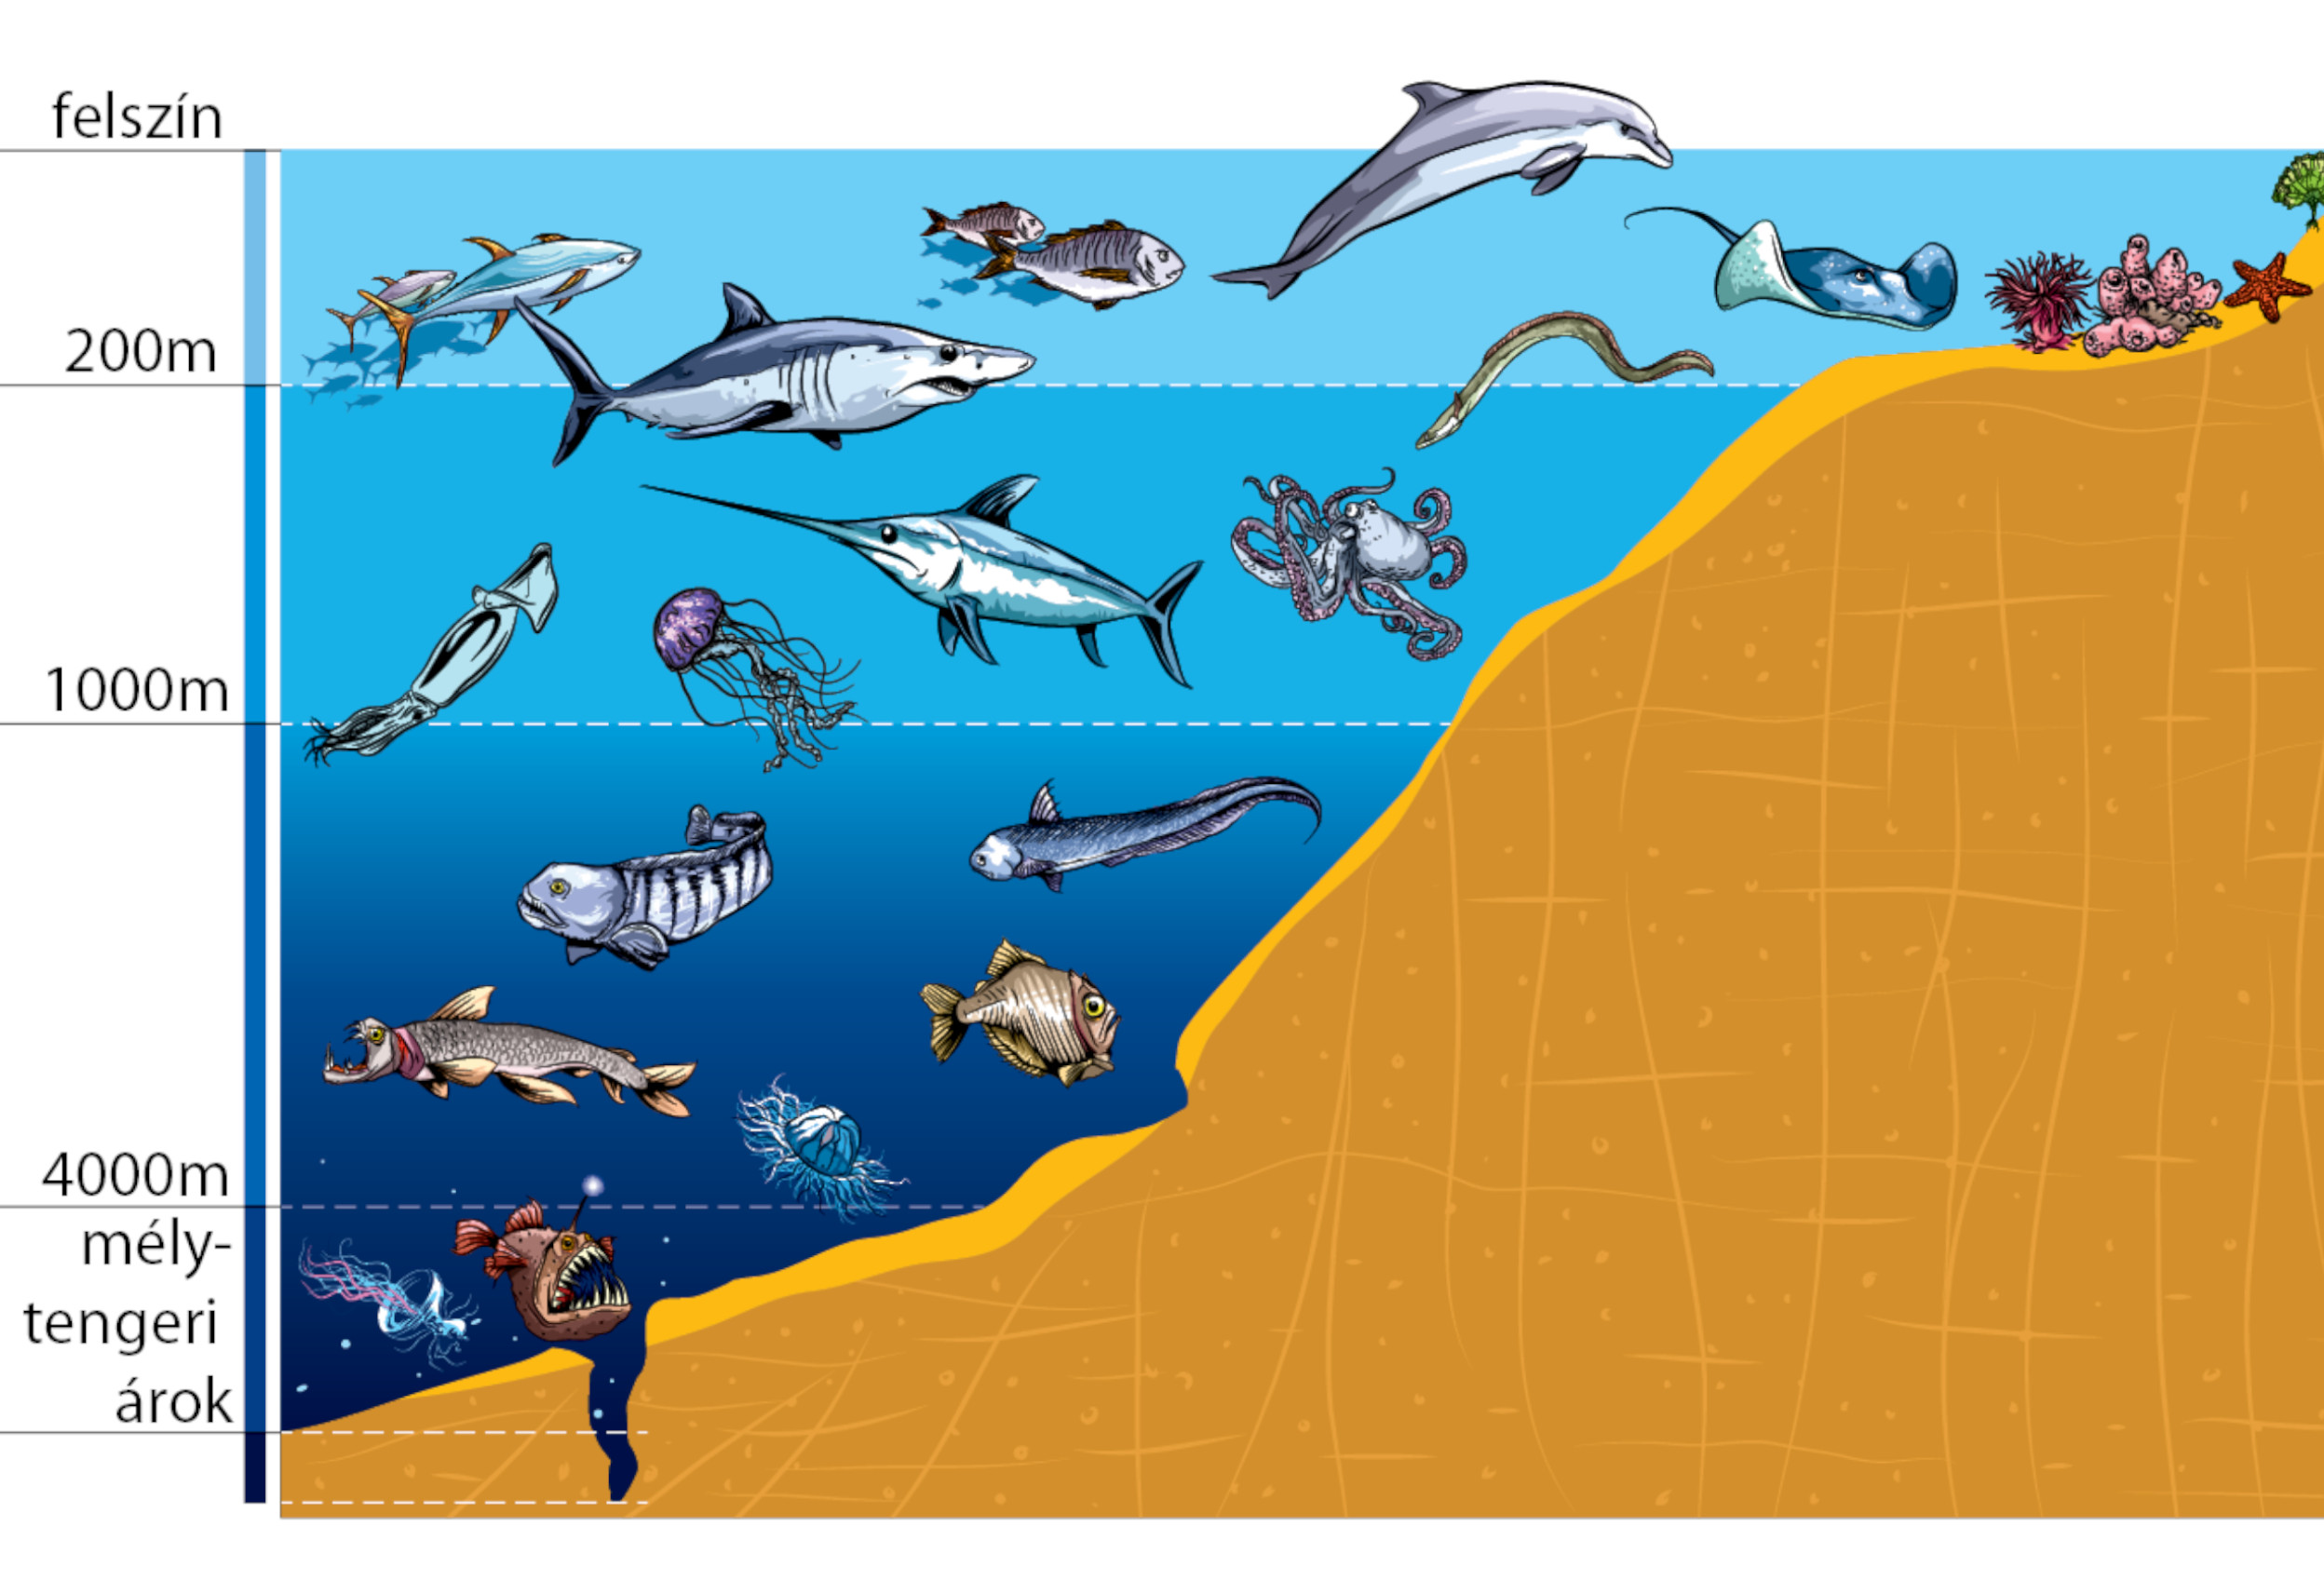 Экологические сообщества мирового океана. Зоны мирового океана и их обитатели. Жизнь организмов в морях и океанах. Слои океана. Обитатели моря по глубине.